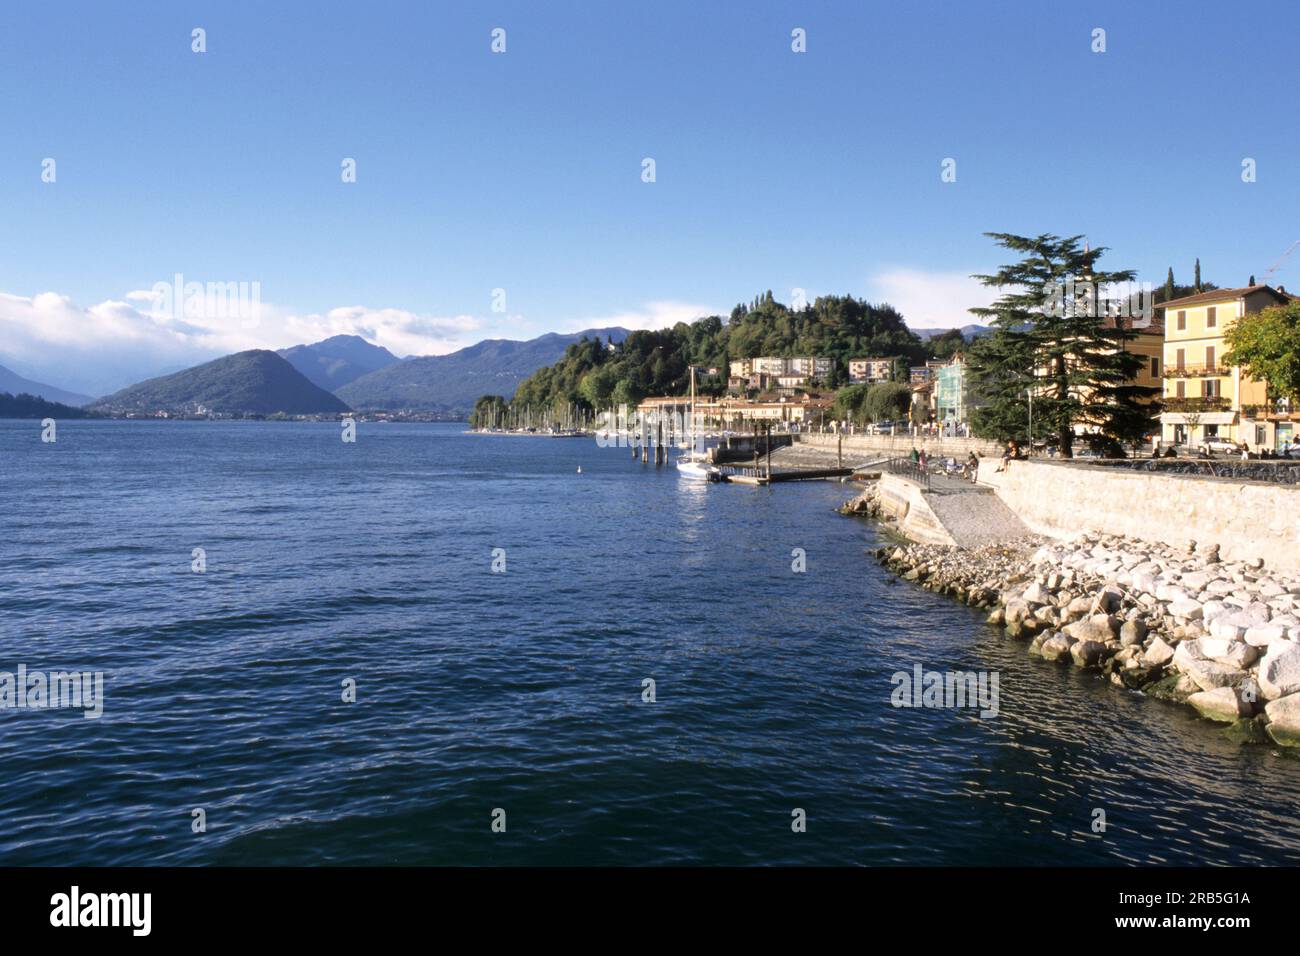 Laveno-mombello. Lago Maggiore. Lombardy. Italy Stock Photo